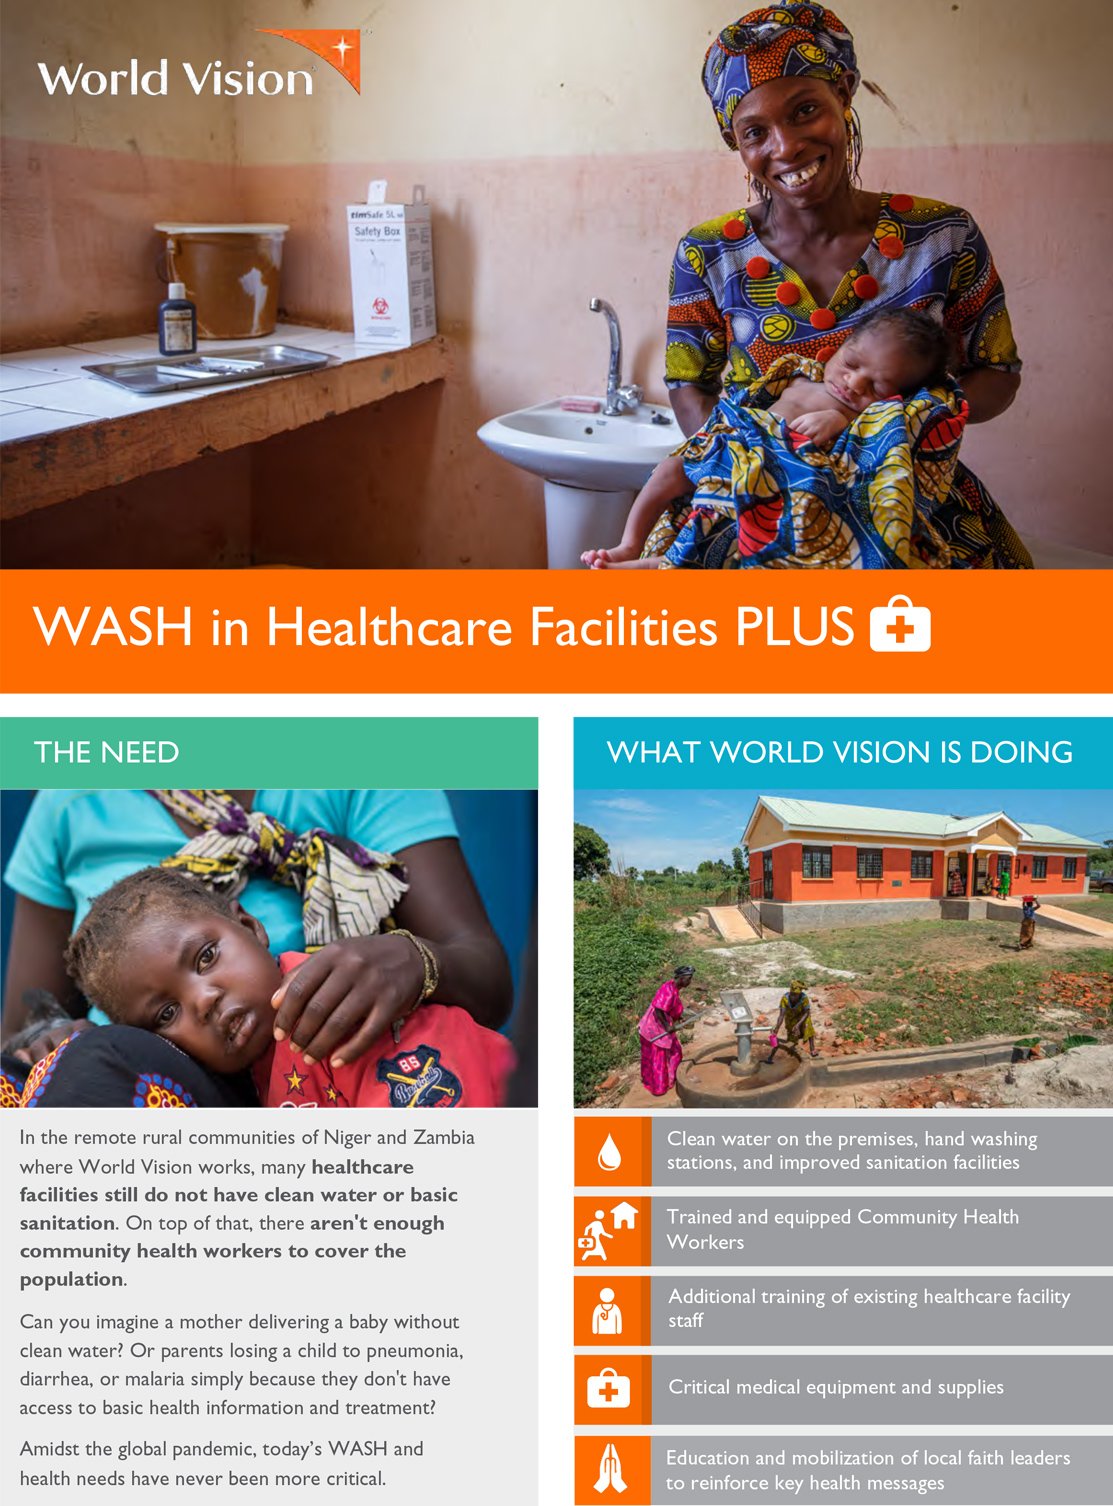 WASH in Healthcare Facilities Plus